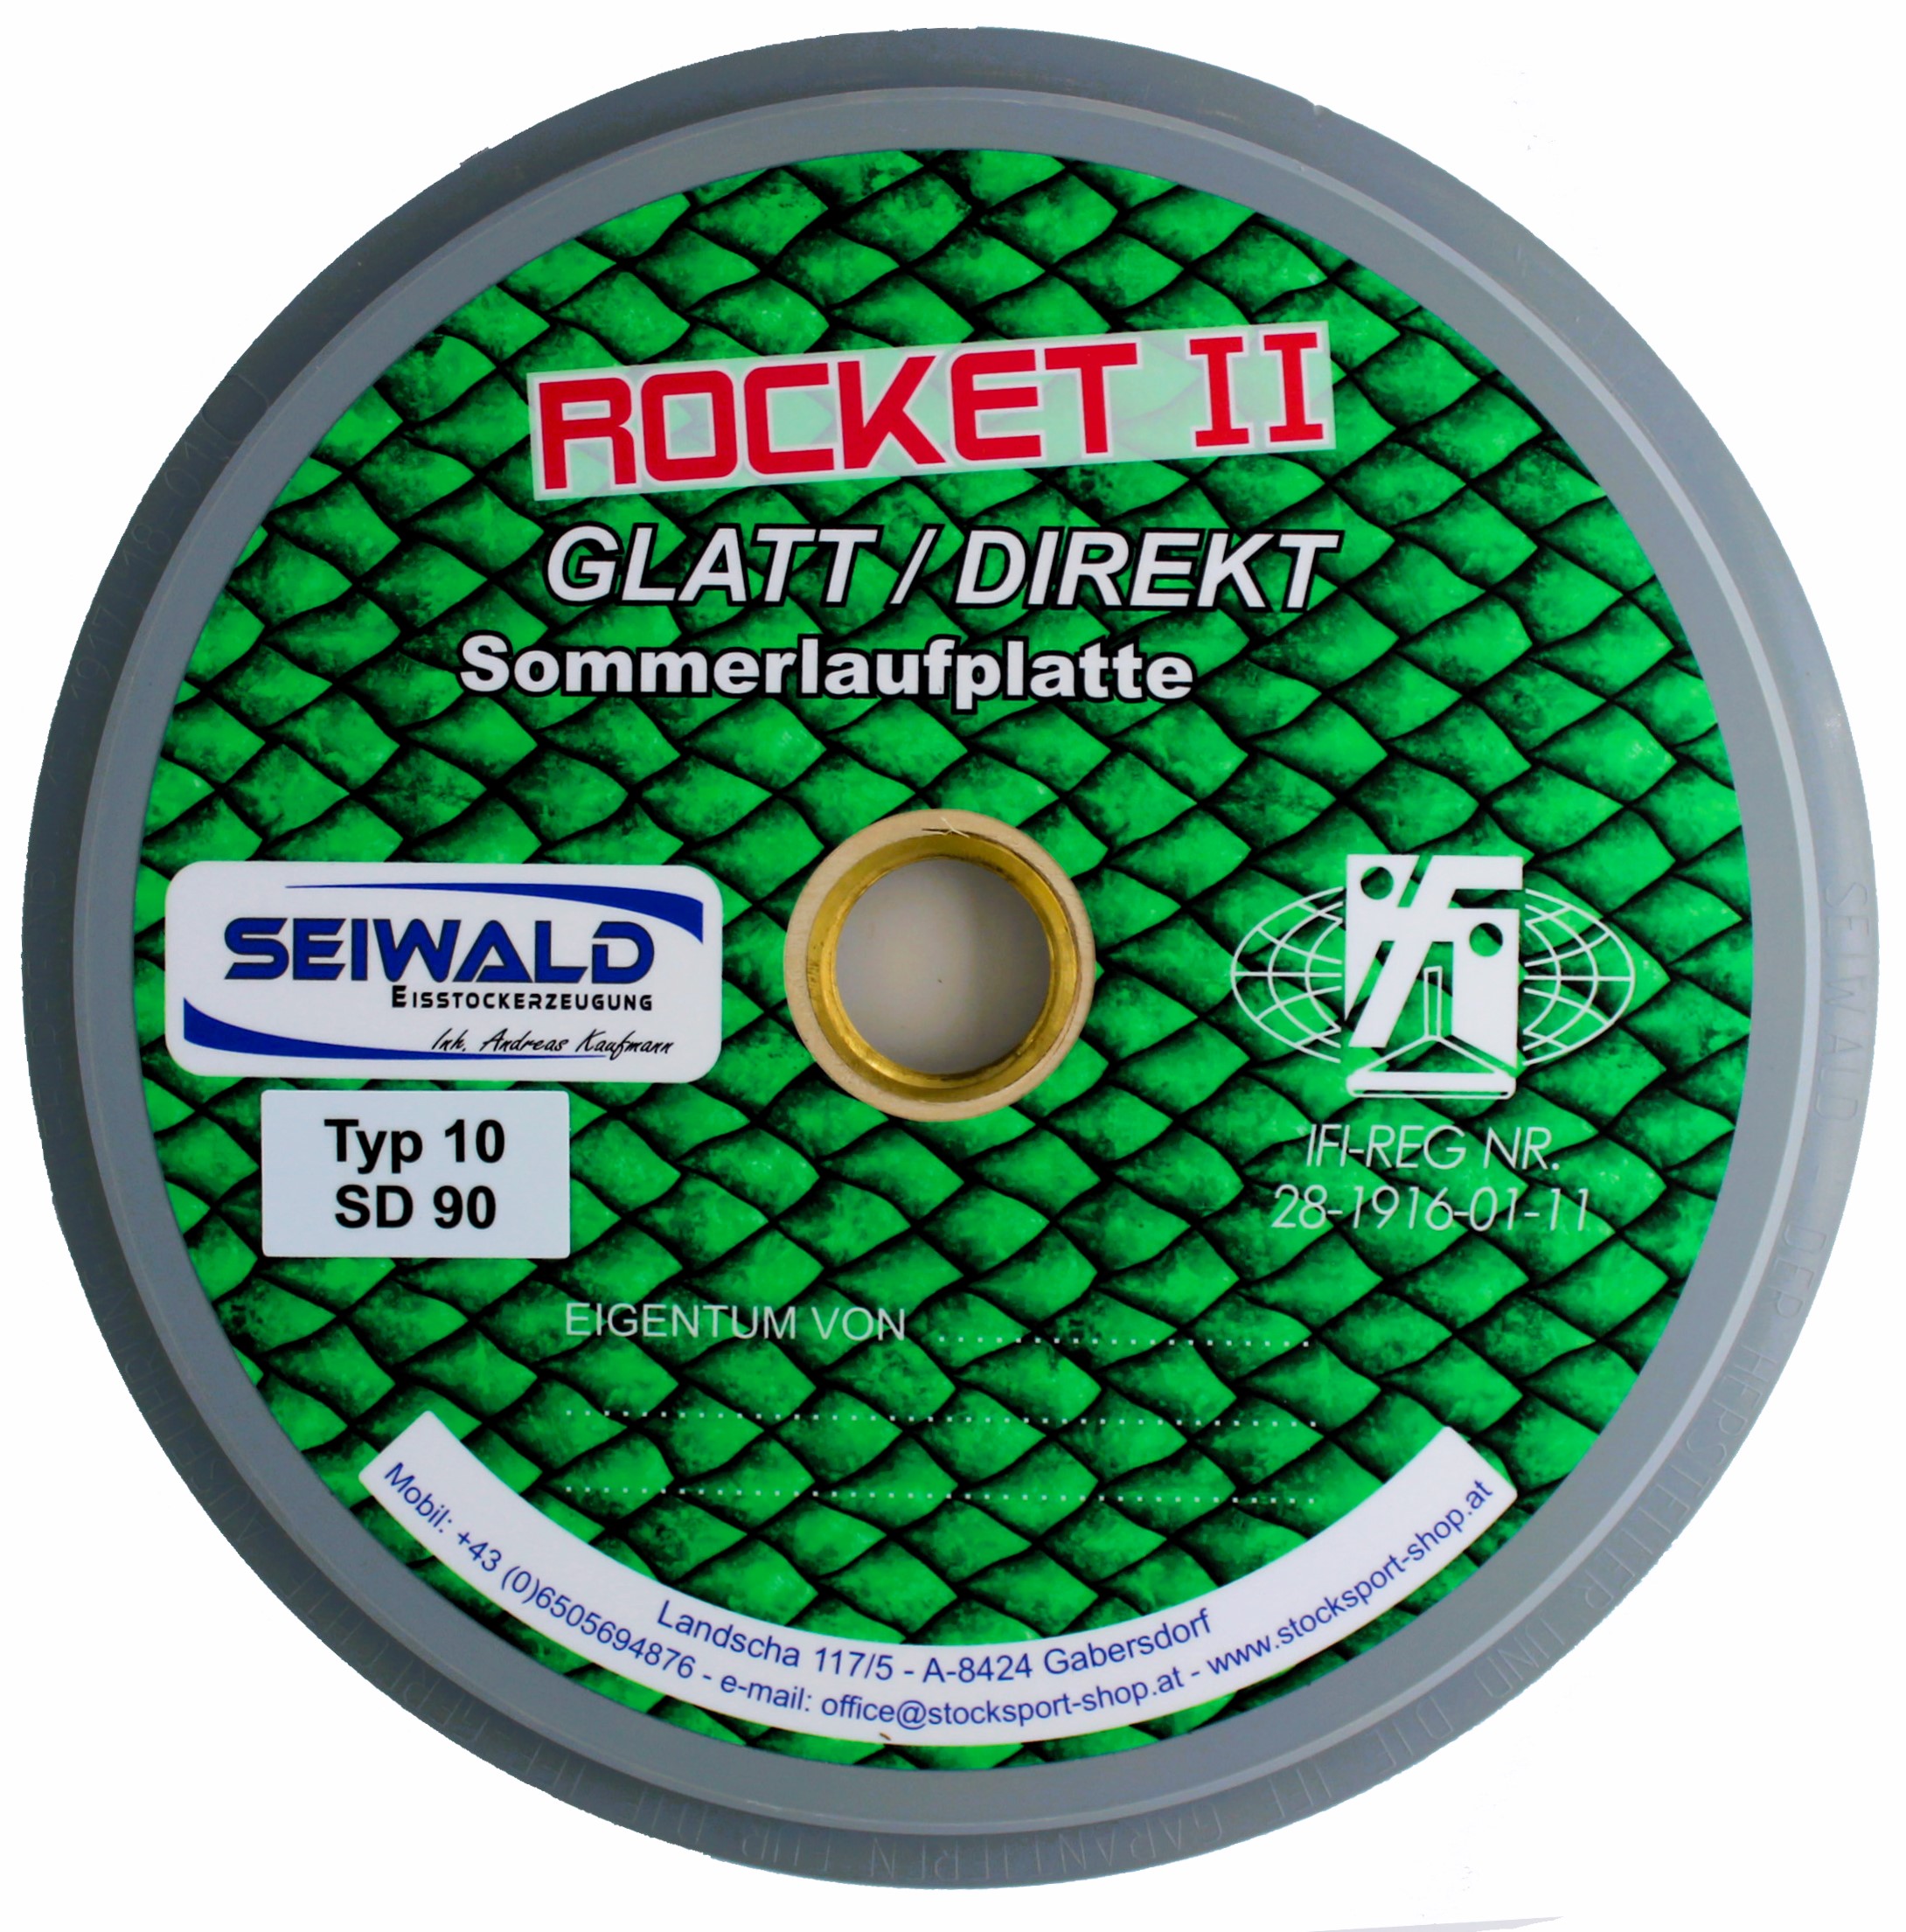 SEIWALD Rocket II Typ 10 / Die Schnellste 